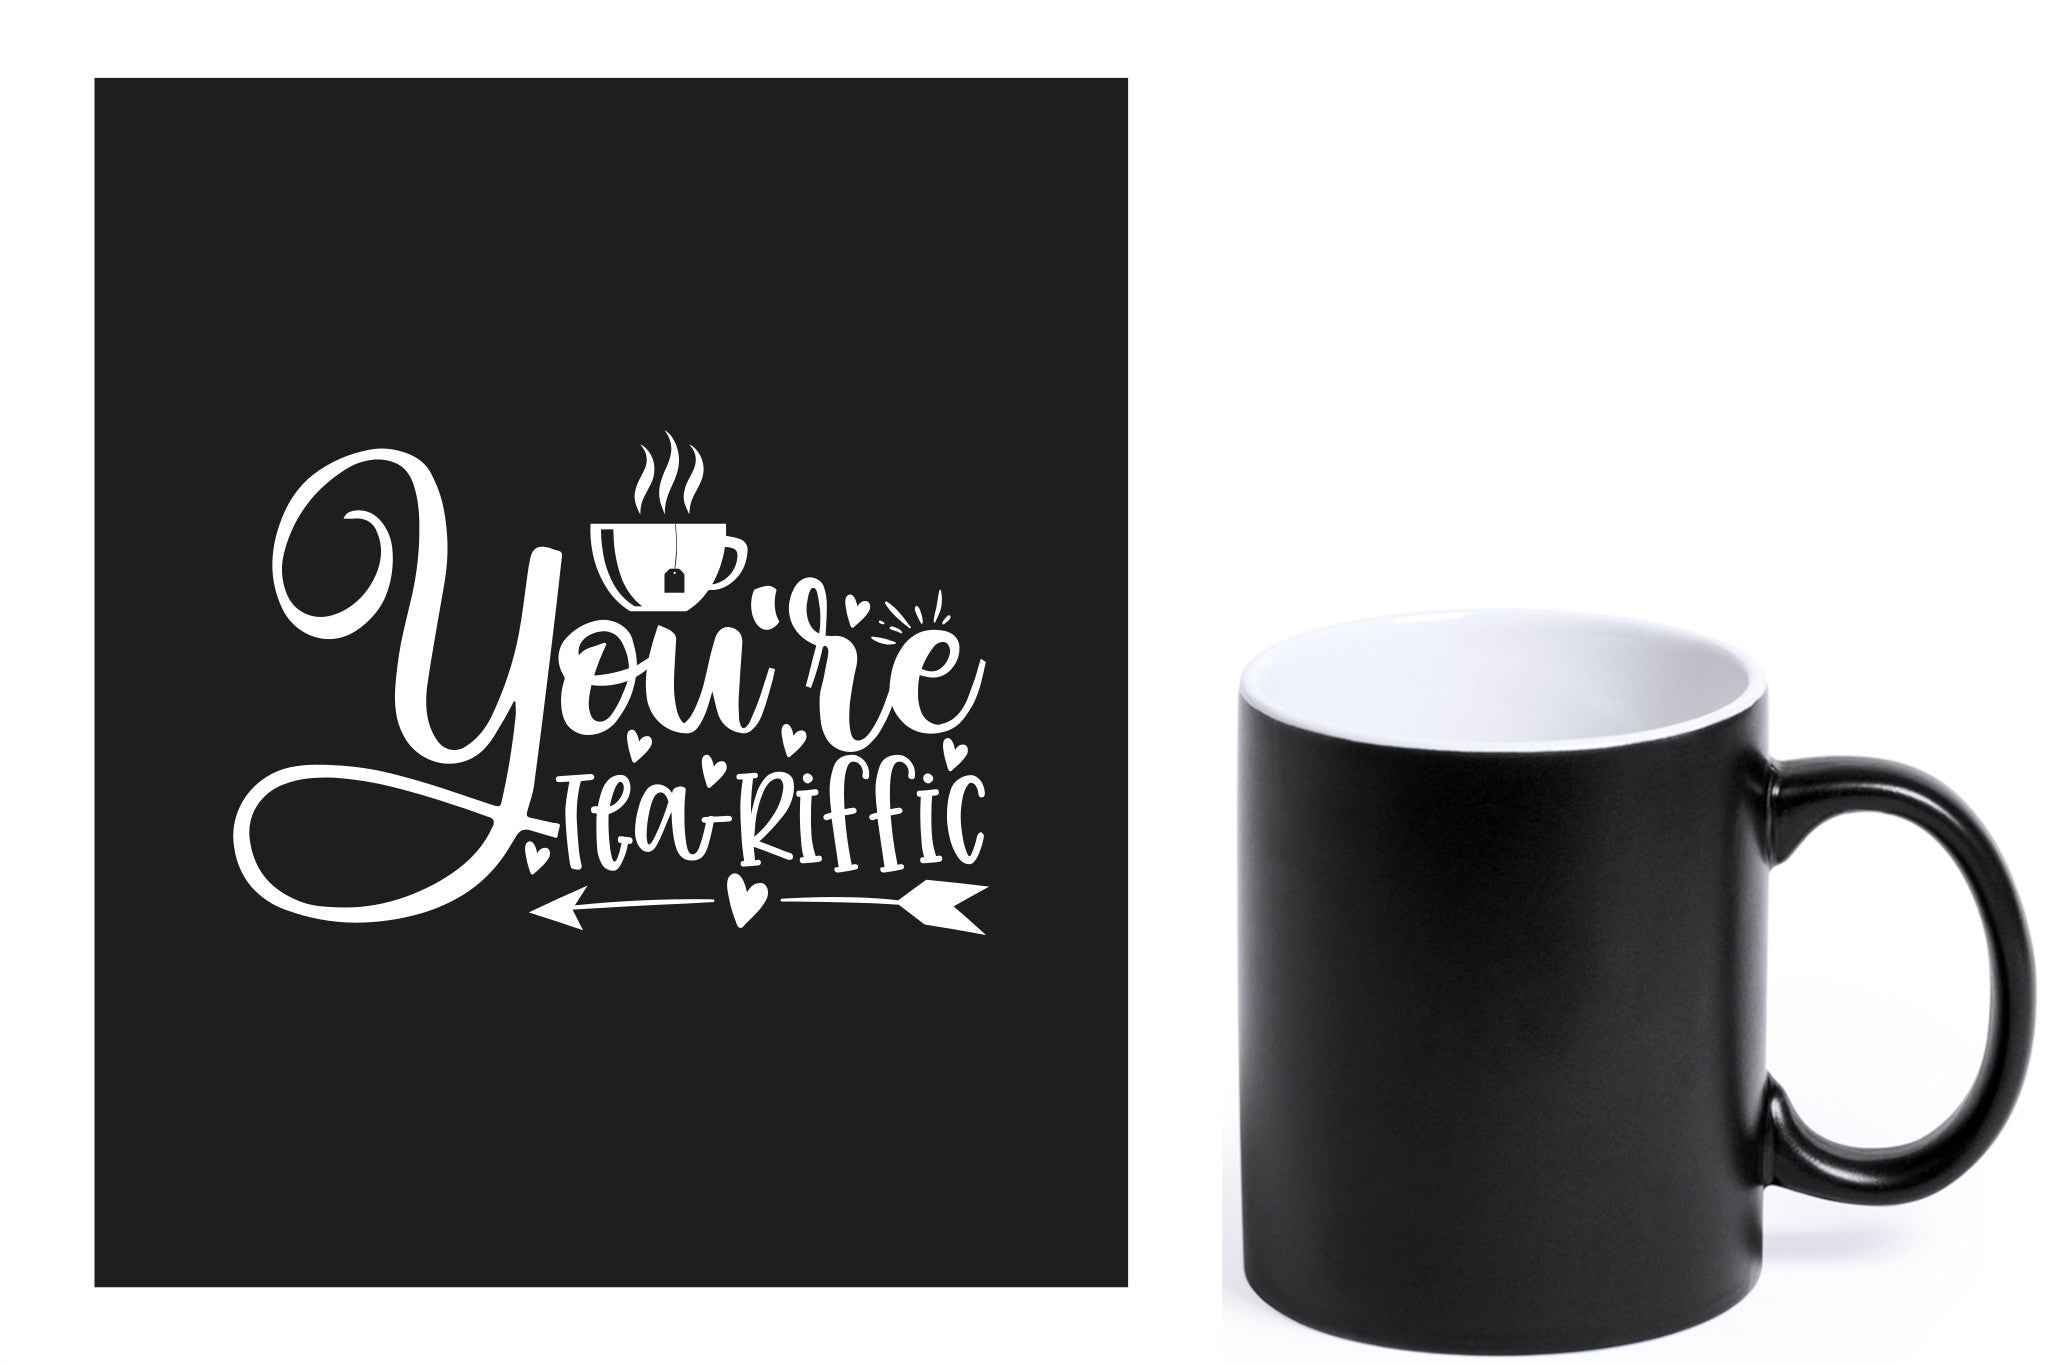 zwarte keramische mok met witte gravure  'You're teariffic'.